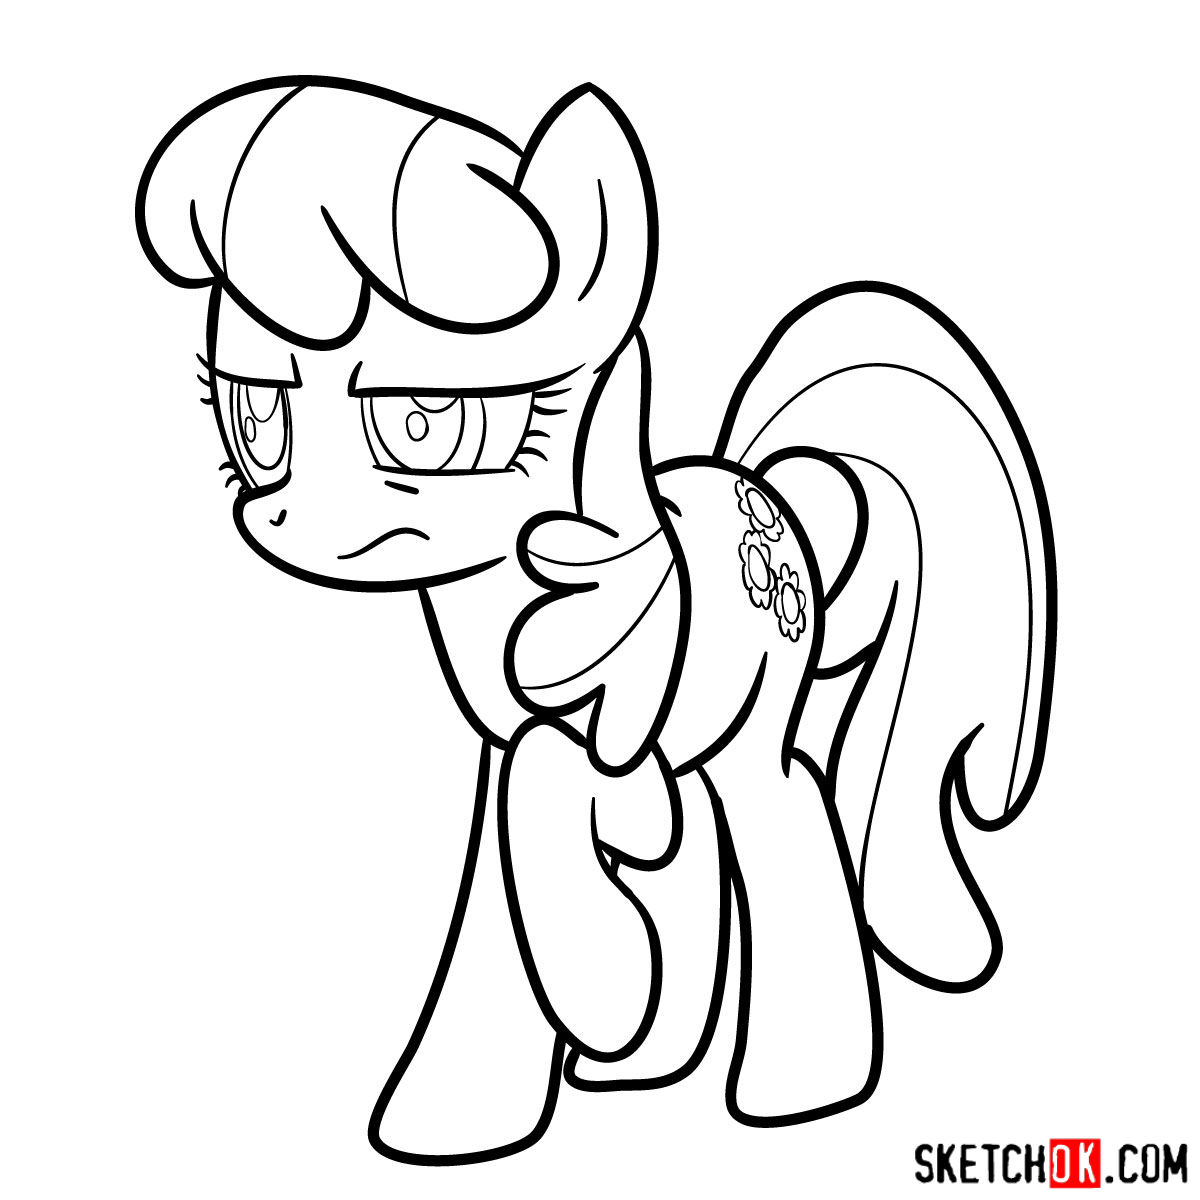 How to draw Cheerilee pony - step 12